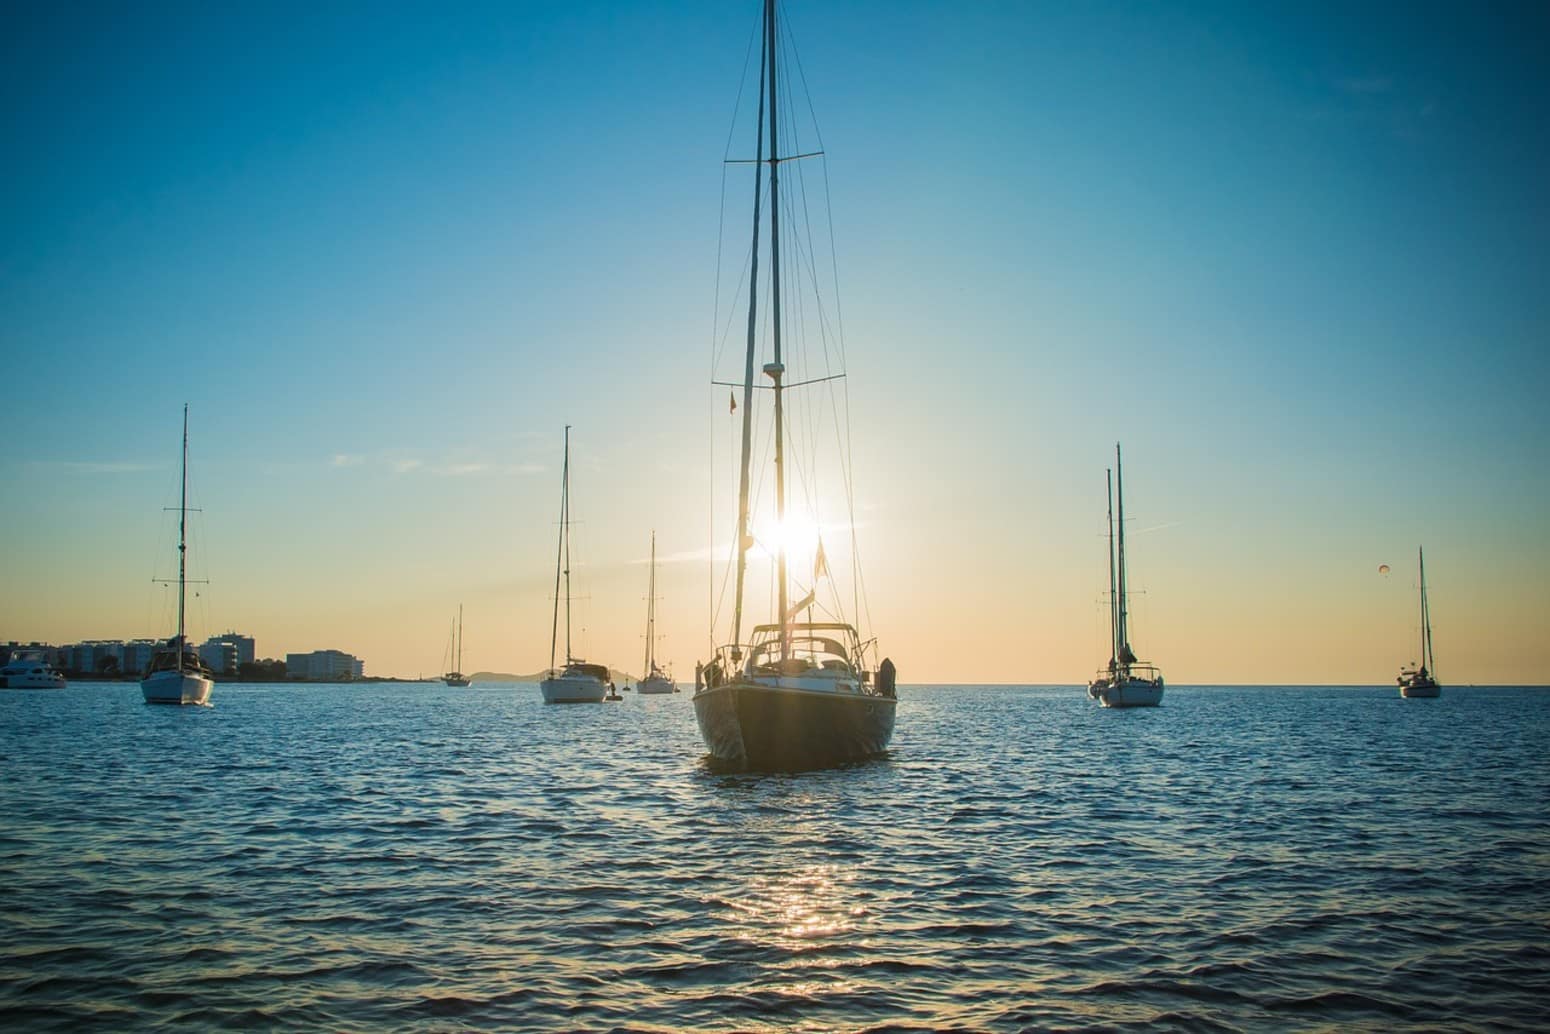 Vacaciones baratas en Ibiza – Consejos para un verano low cost